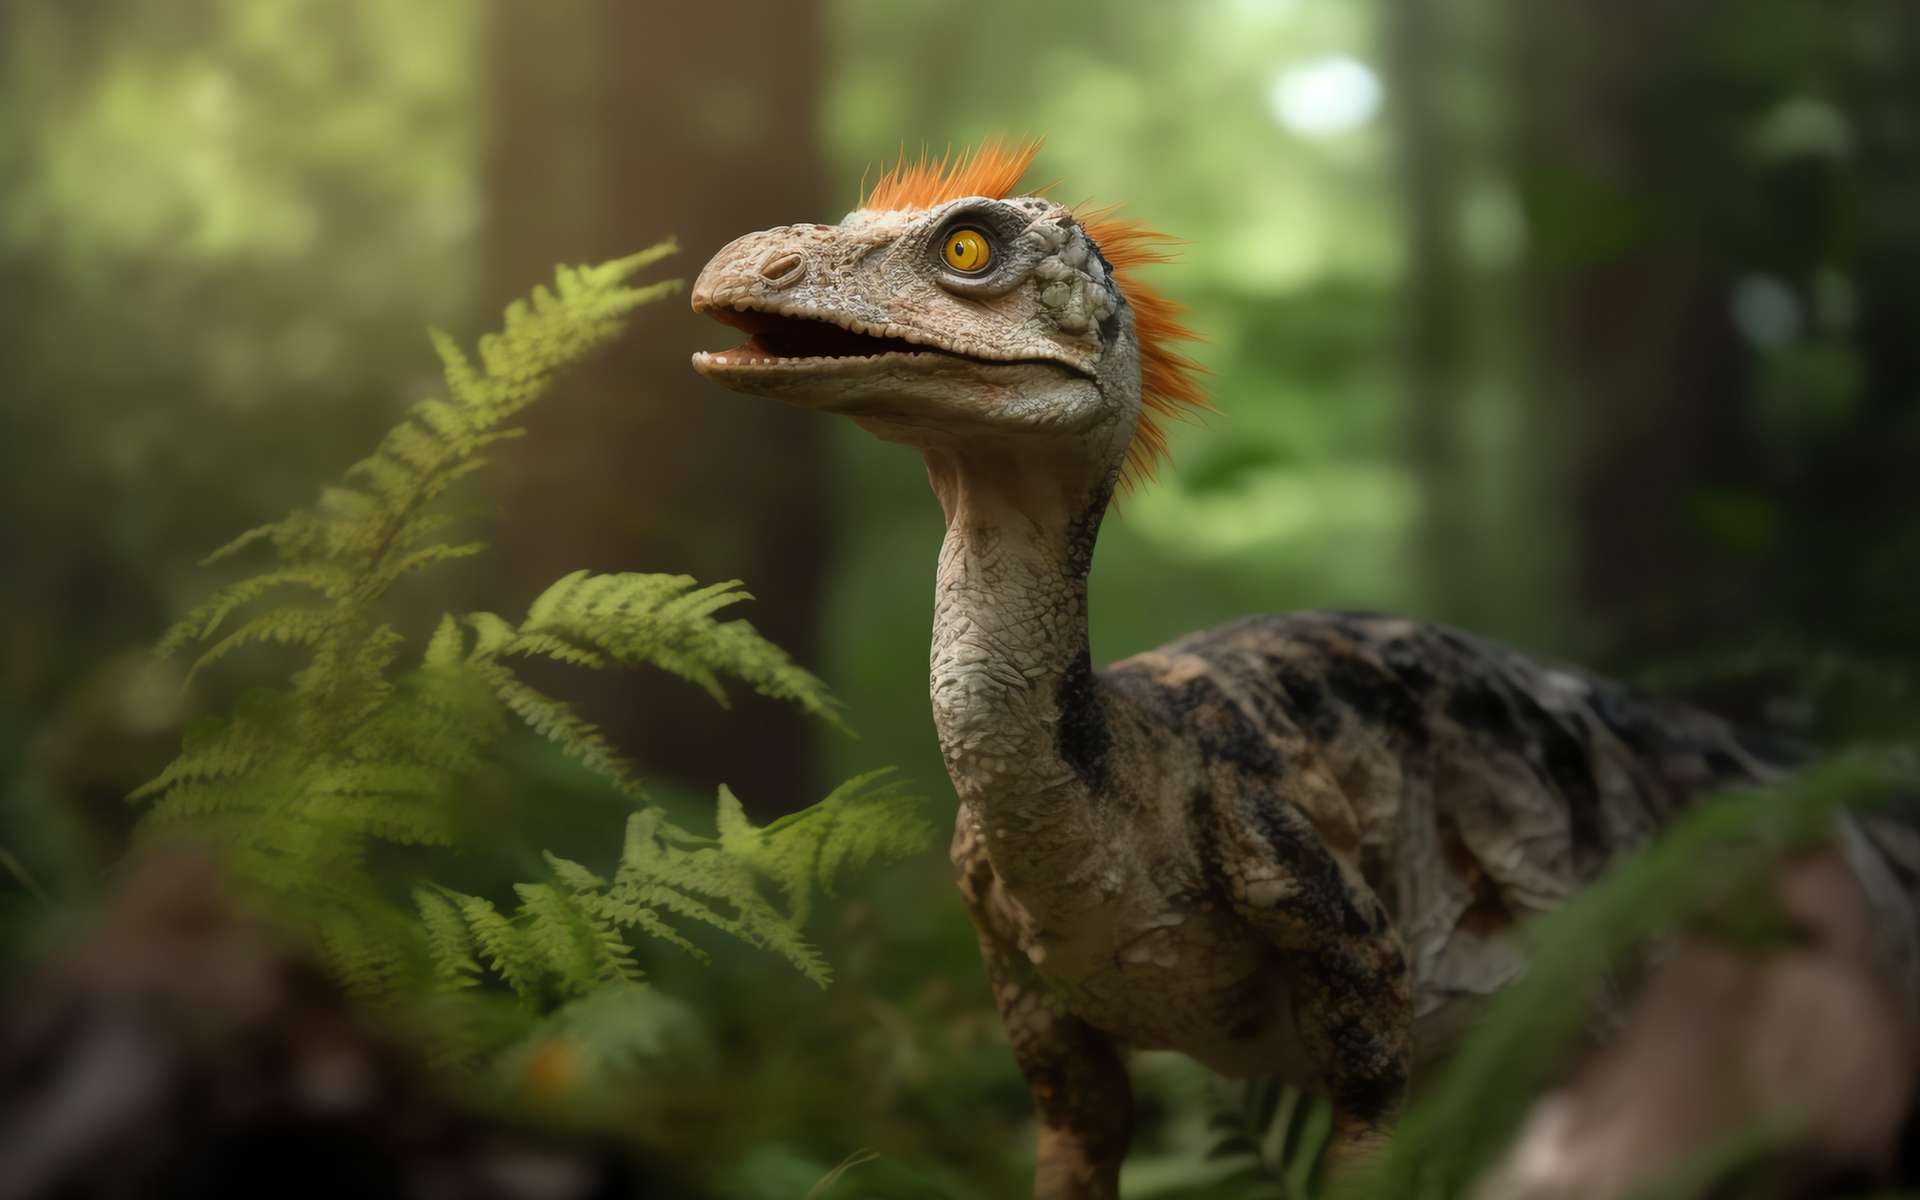 Voici à quoi devaient ressembler les premiers dinosaures à plumes !